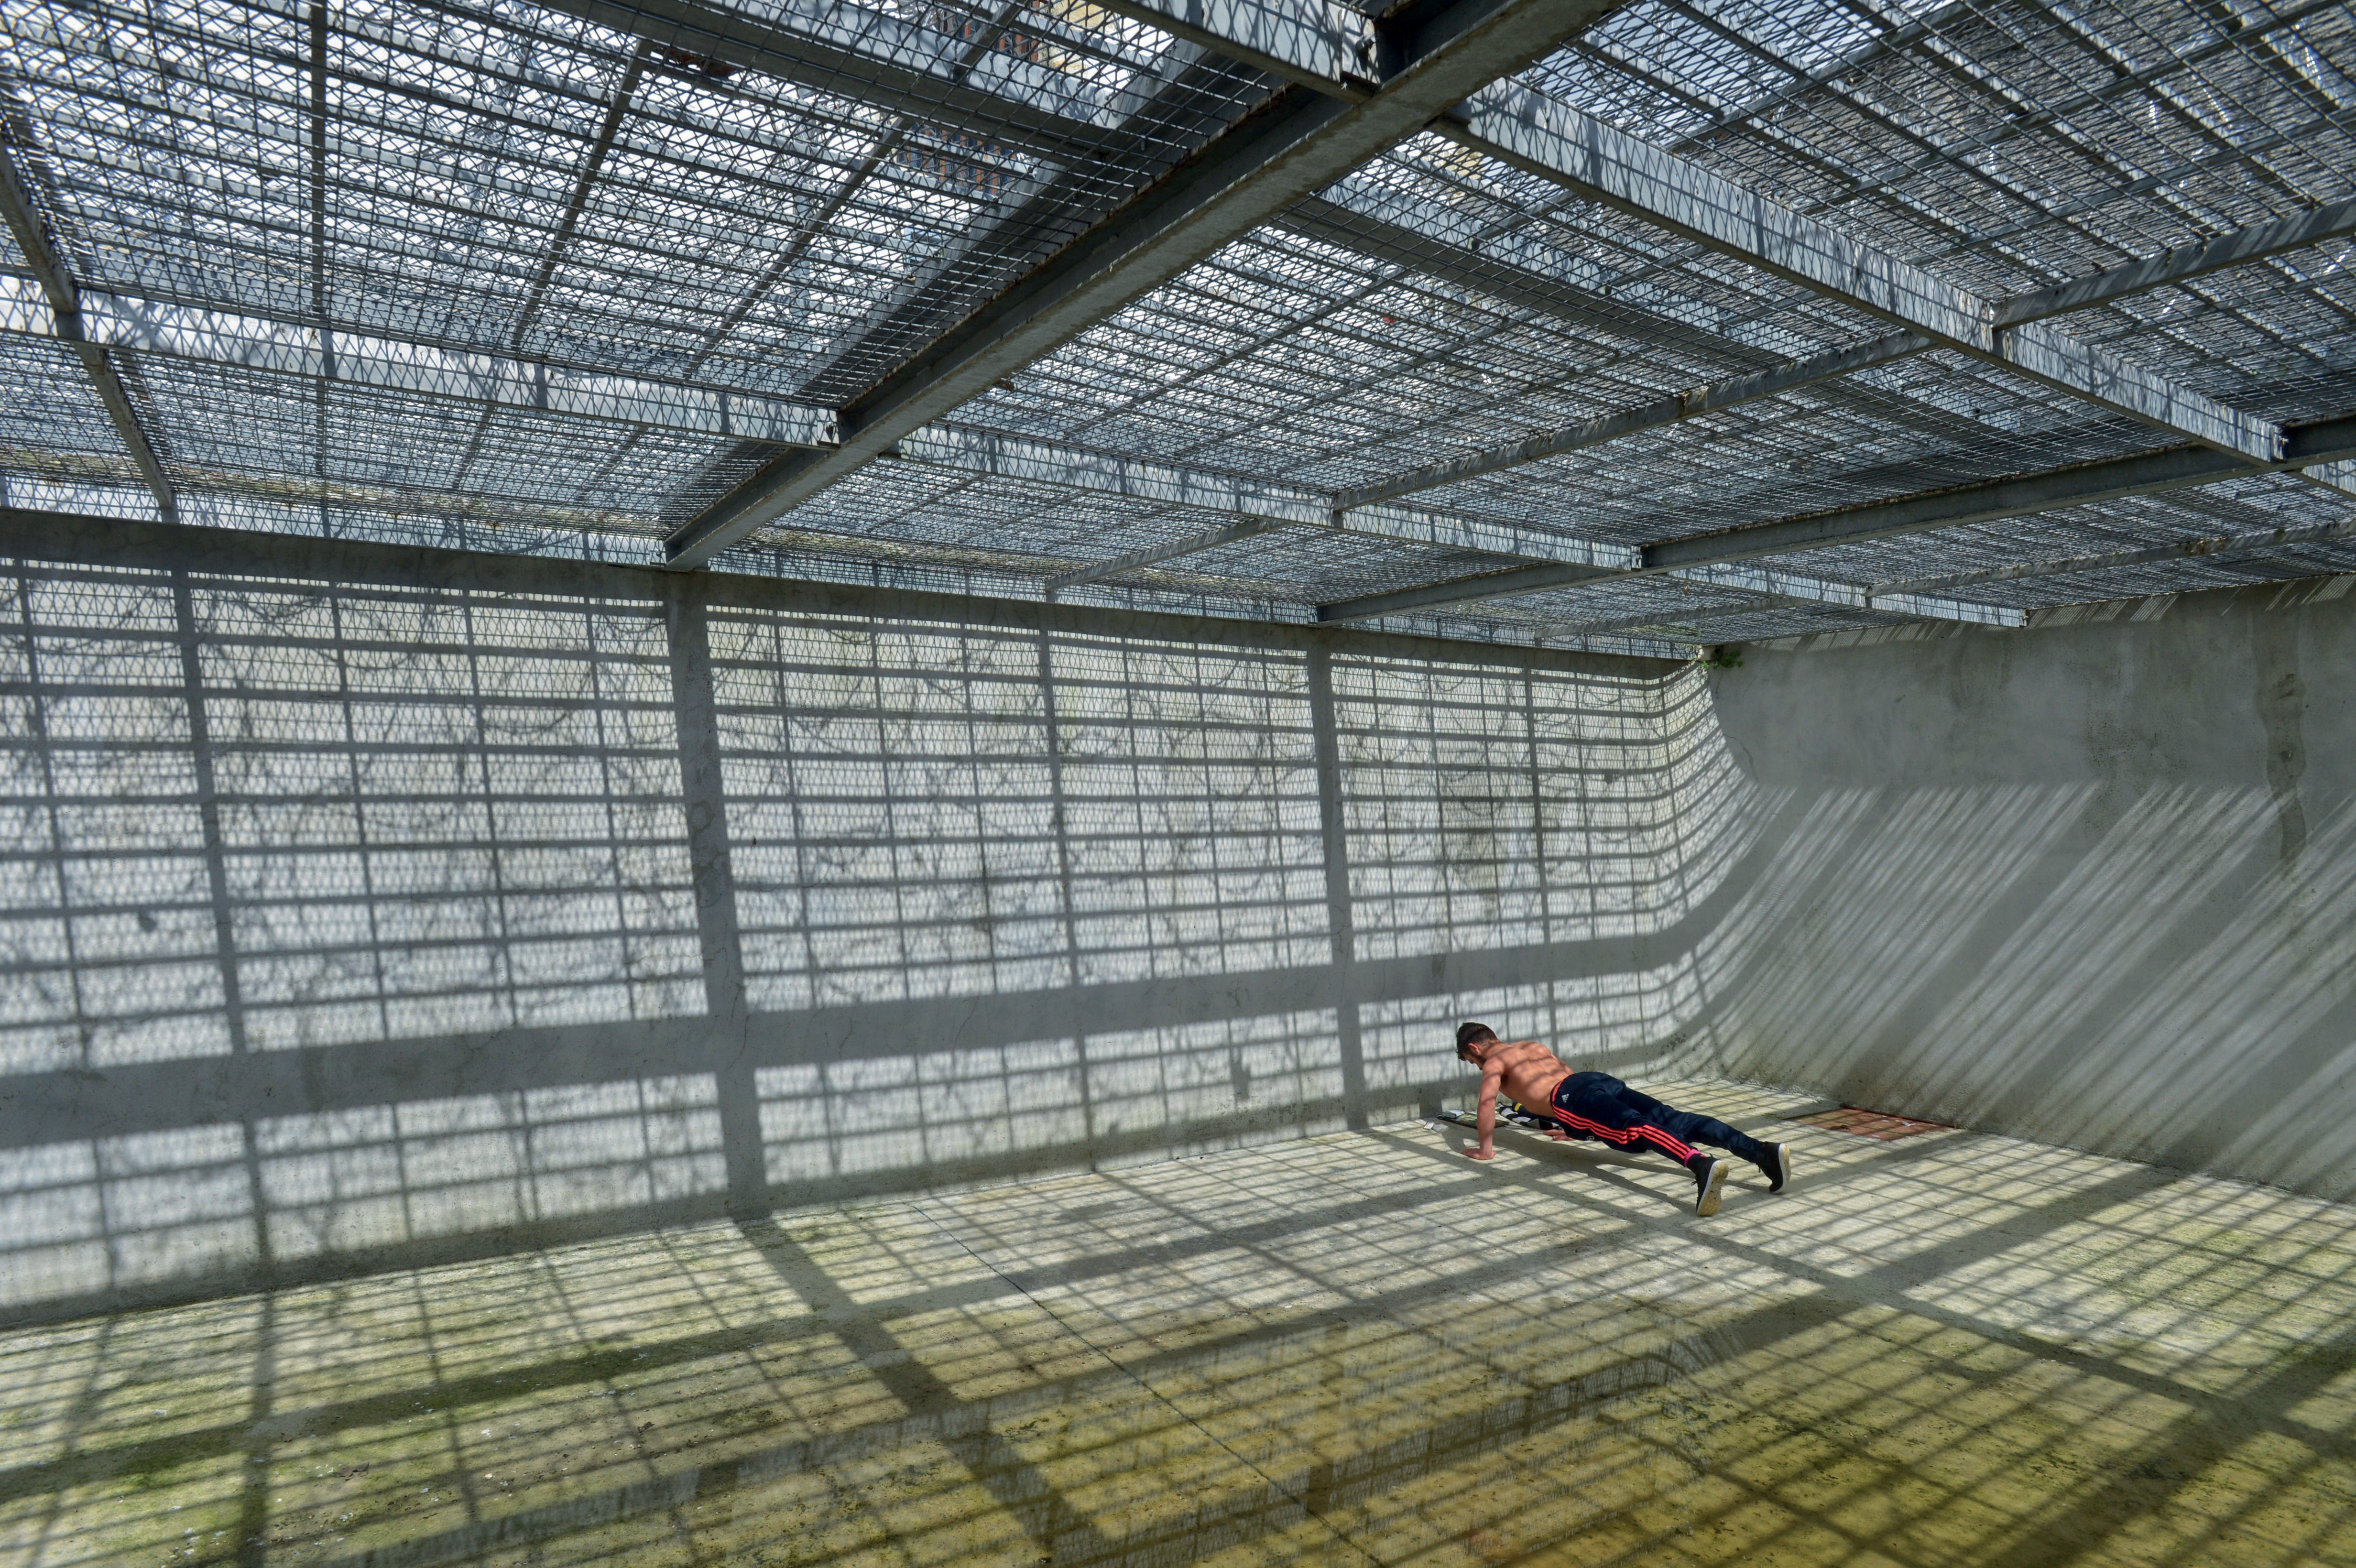 Photographie d'un homme faisant des pompes enfermé dans une prison par Jean-Christophe Hanché